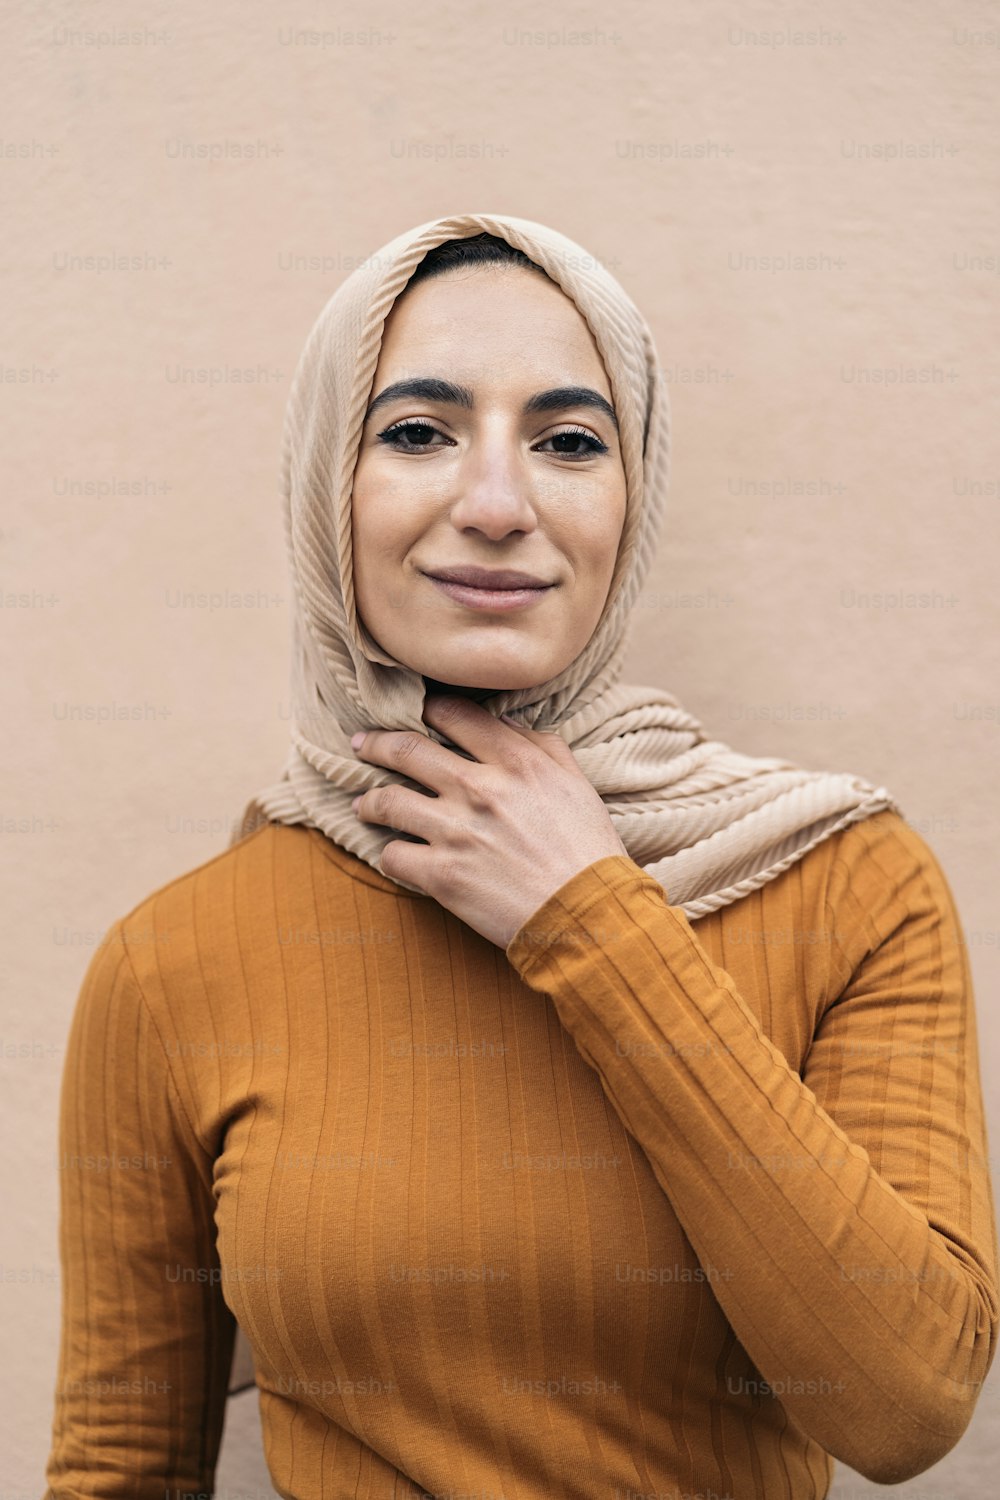 Joven musulmana feliz con pañuelo rosa sonriendo y mirando a la cámara.